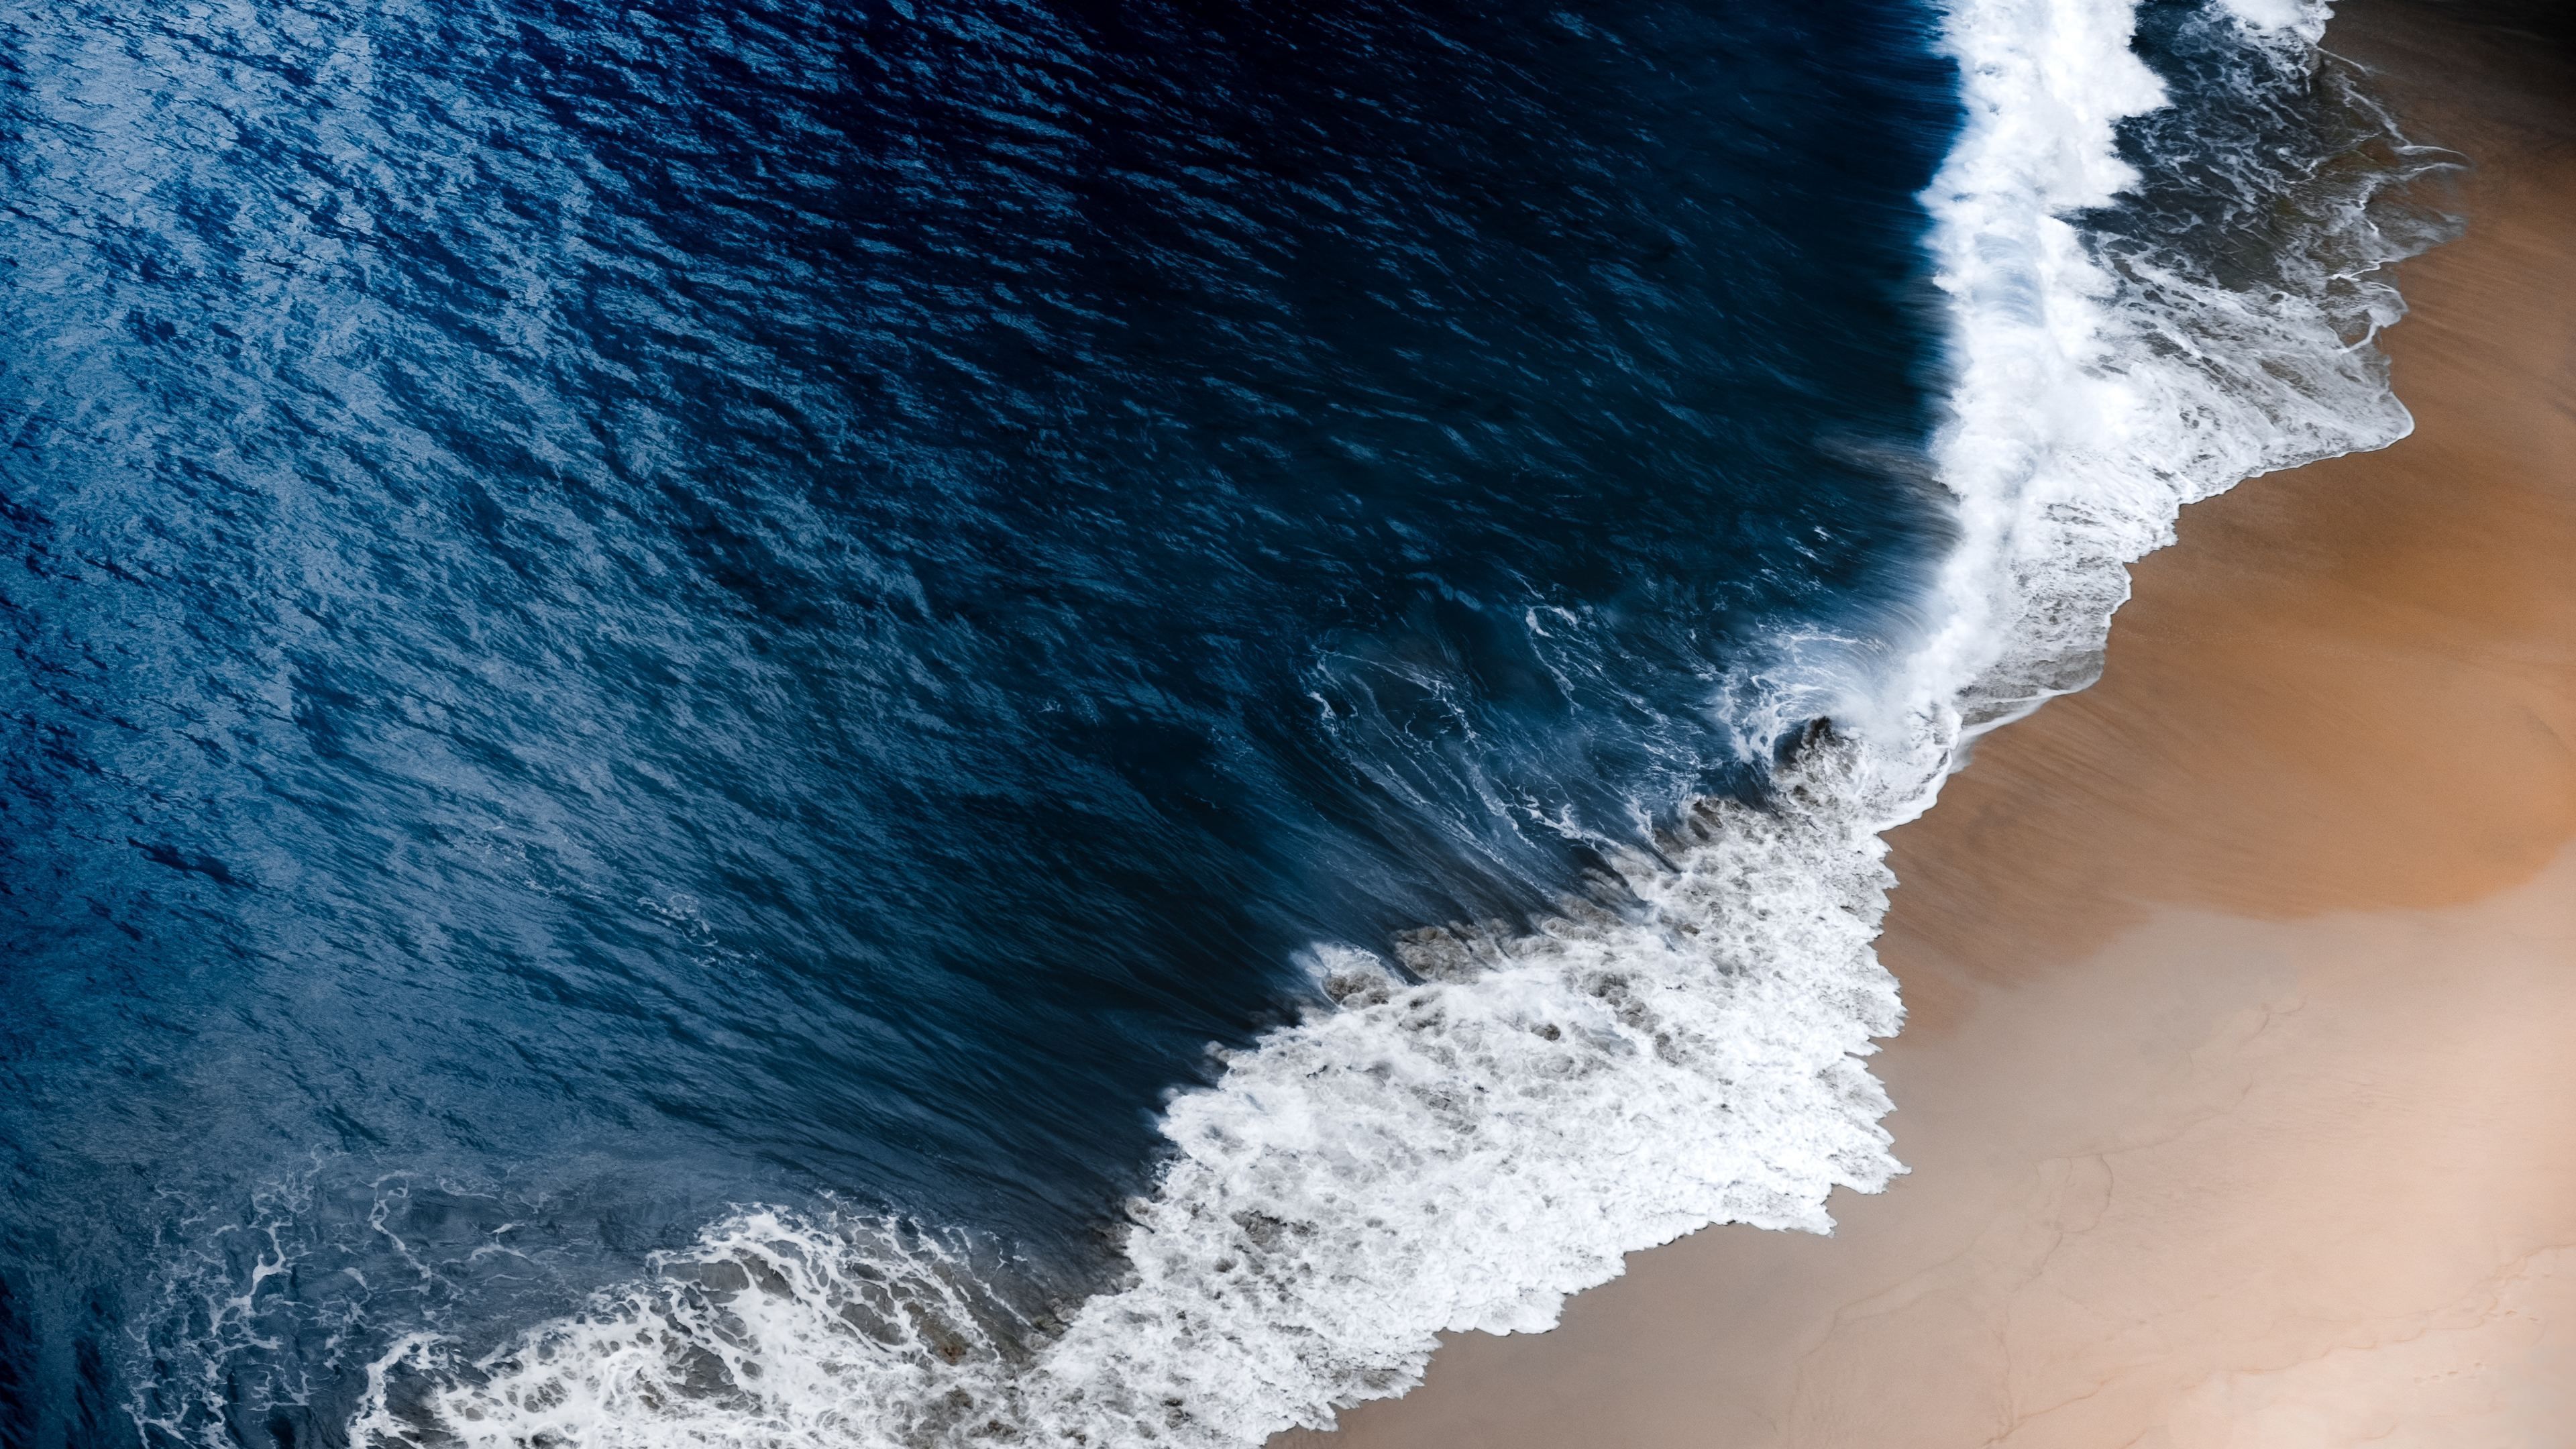 Blue Ocean Waves 4k Waves Wallpaper, Ocean Wallpaper, Nature Wallpaper, Hd Wallpaper, 5k Wallpaper, 4k Wallpa. Waves Photo, Waves Wallpaper, Beach Wallpaper